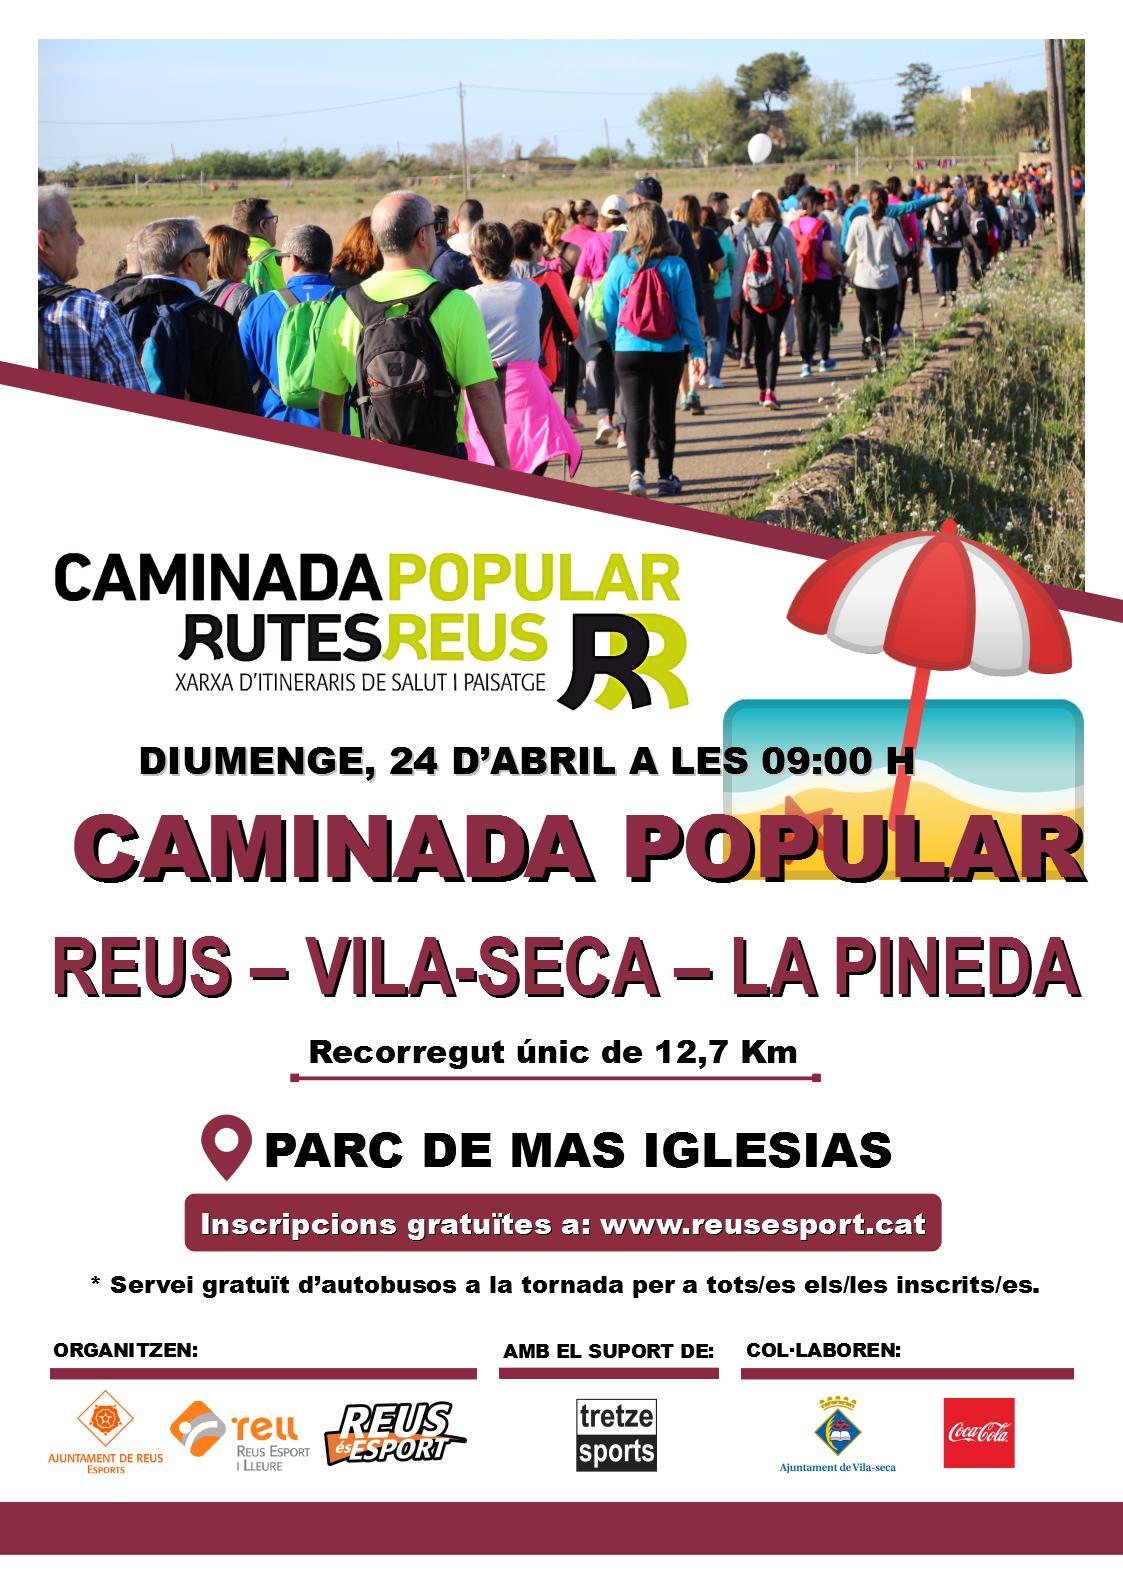 Caminada Popular Reus - Vila-seca - La Pineda